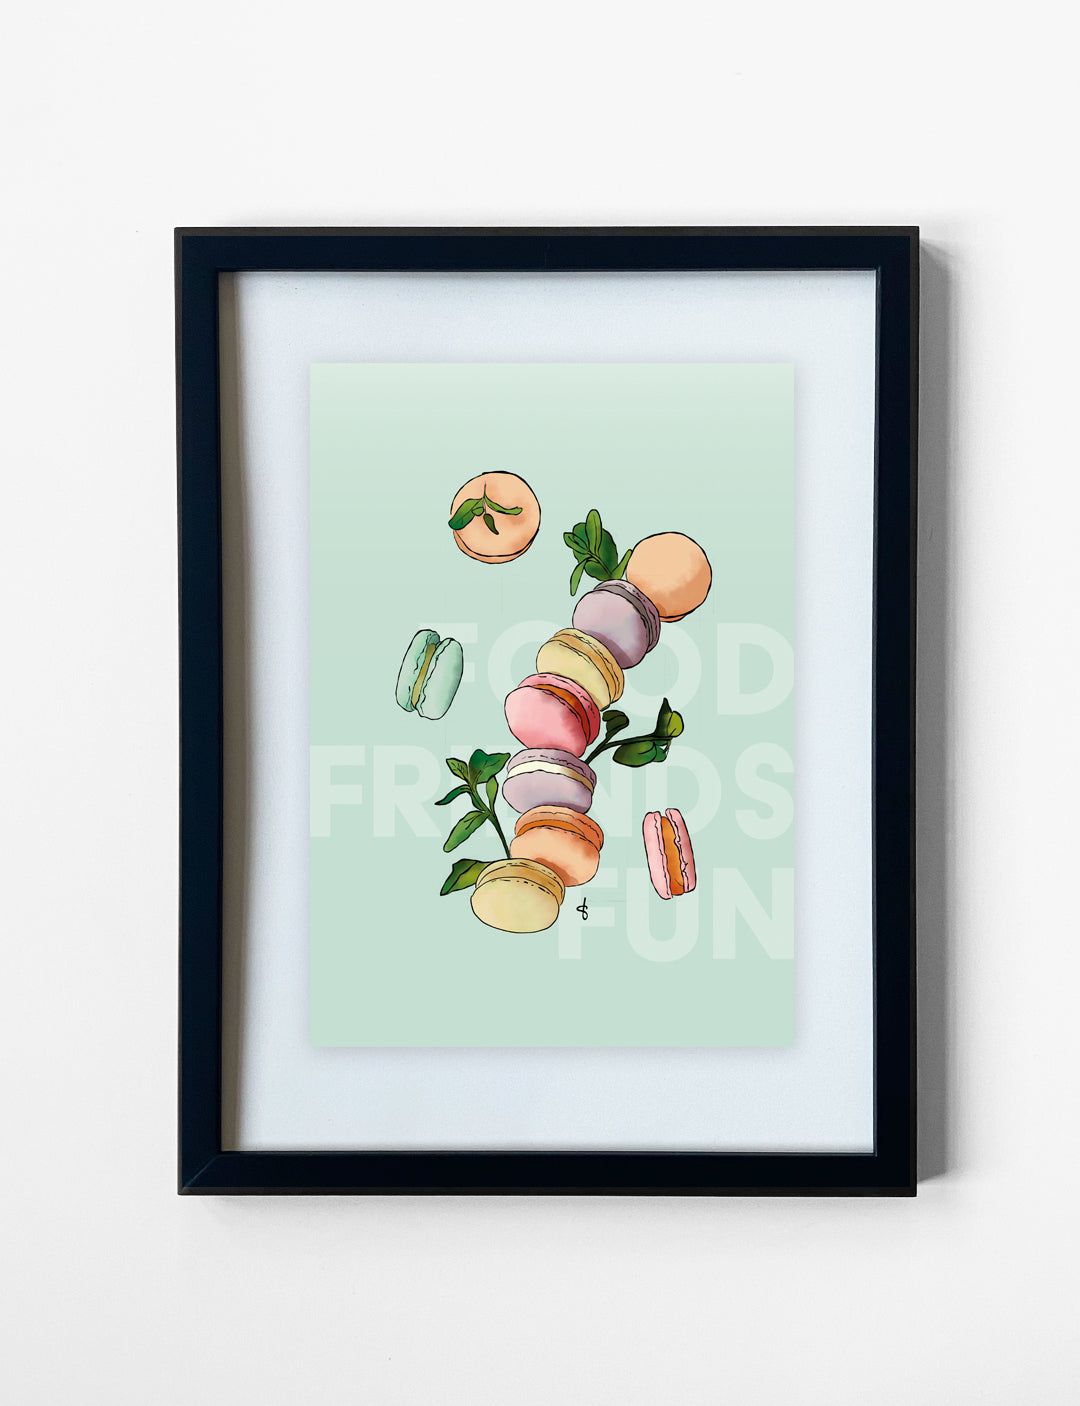 Deze vrolijke poster met een handgetekende illustratie van macarons en de tekst 'Food Friends Fun' is geprint op mooi Tintoretto Gesso papier. De posters met tekst is bijvoorbeeld leuk als keuken poster.